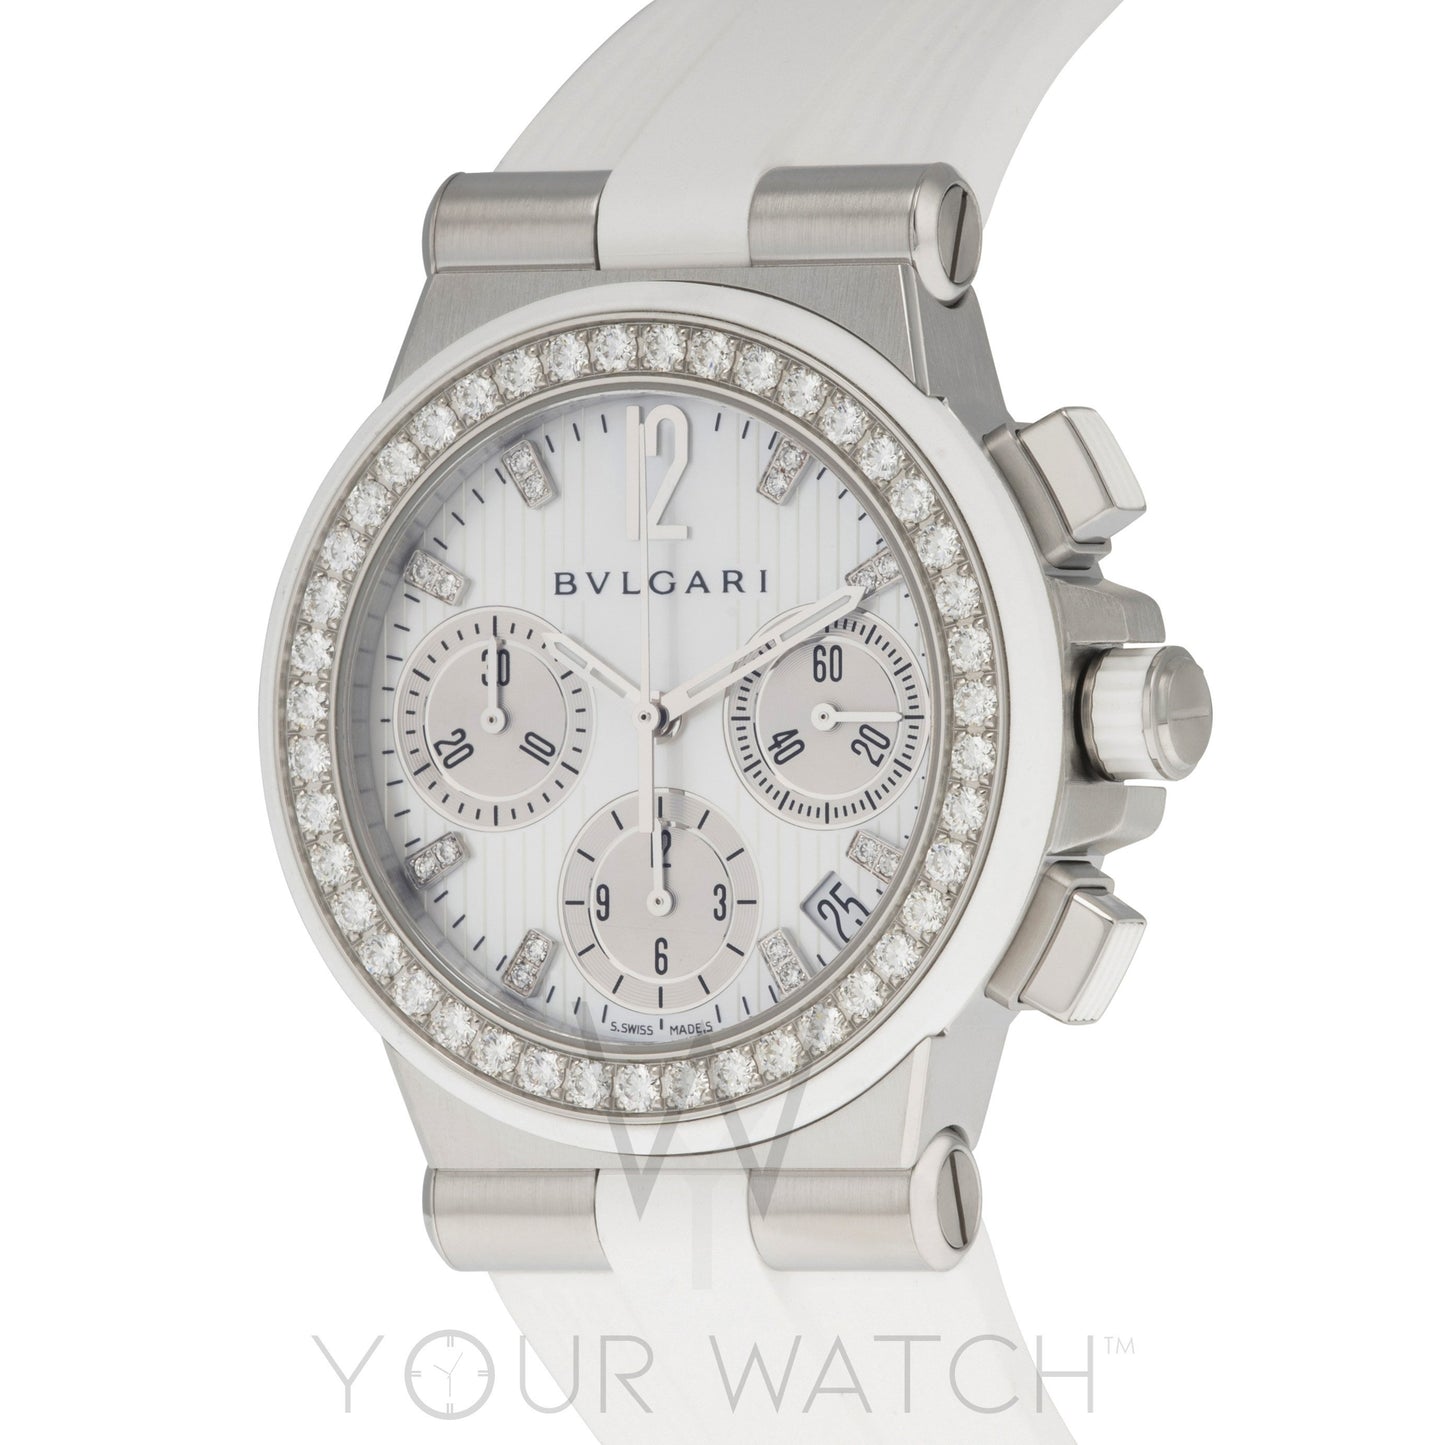 Bvlgari Diagono White Diamond Chronograph Ladies Watch 101755